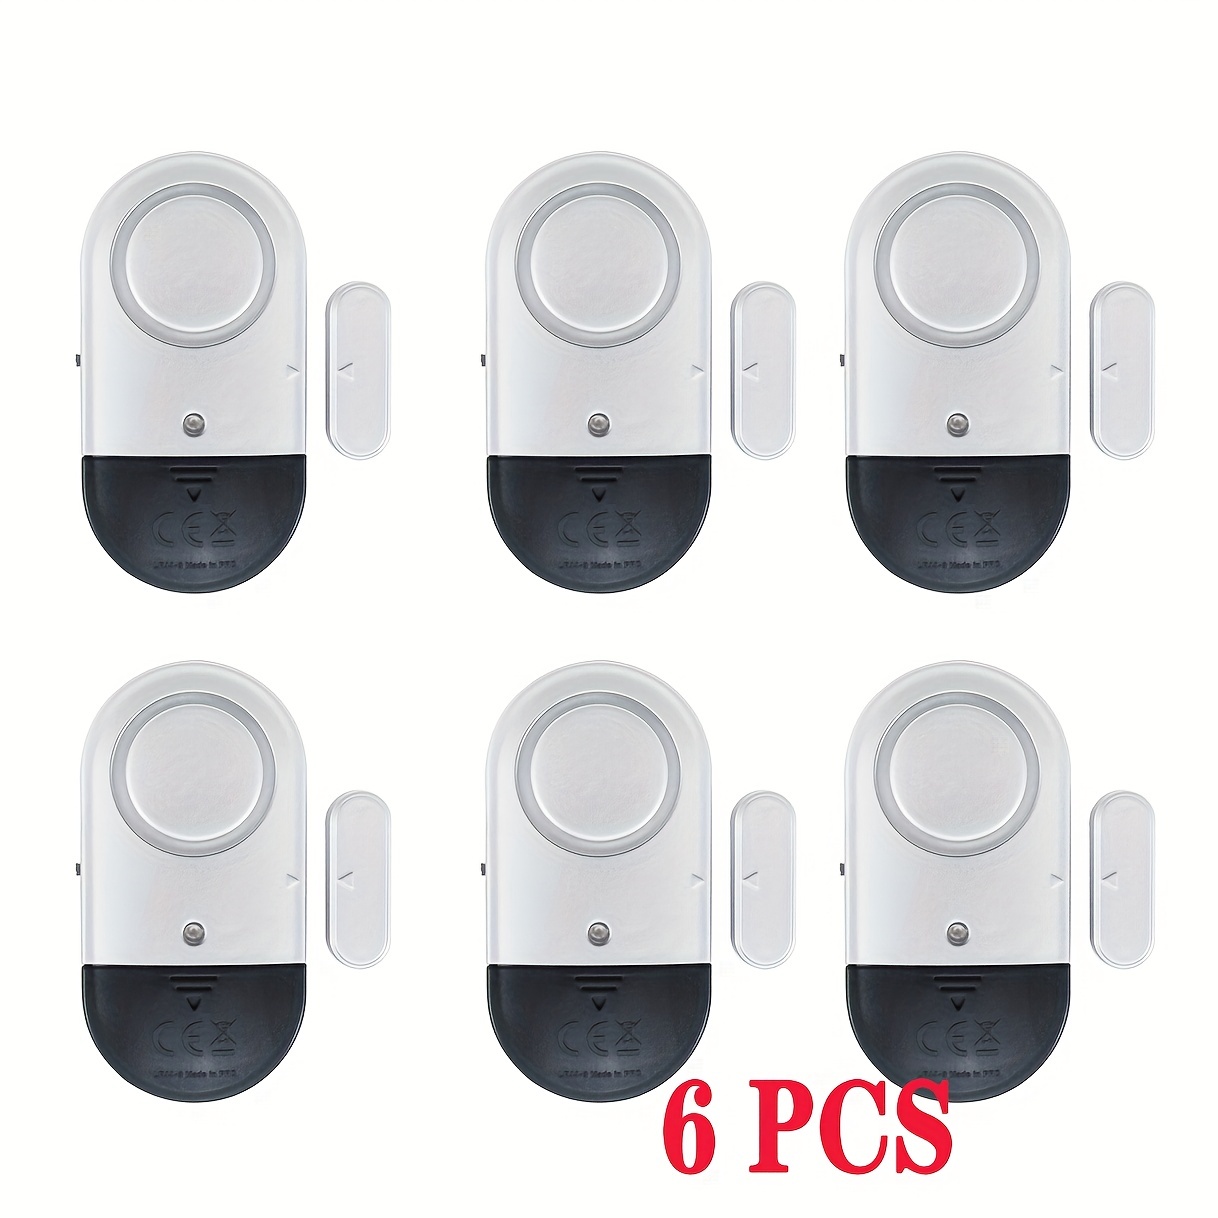 Pack 4 mini alarmas de apertura para puertas y ventanas